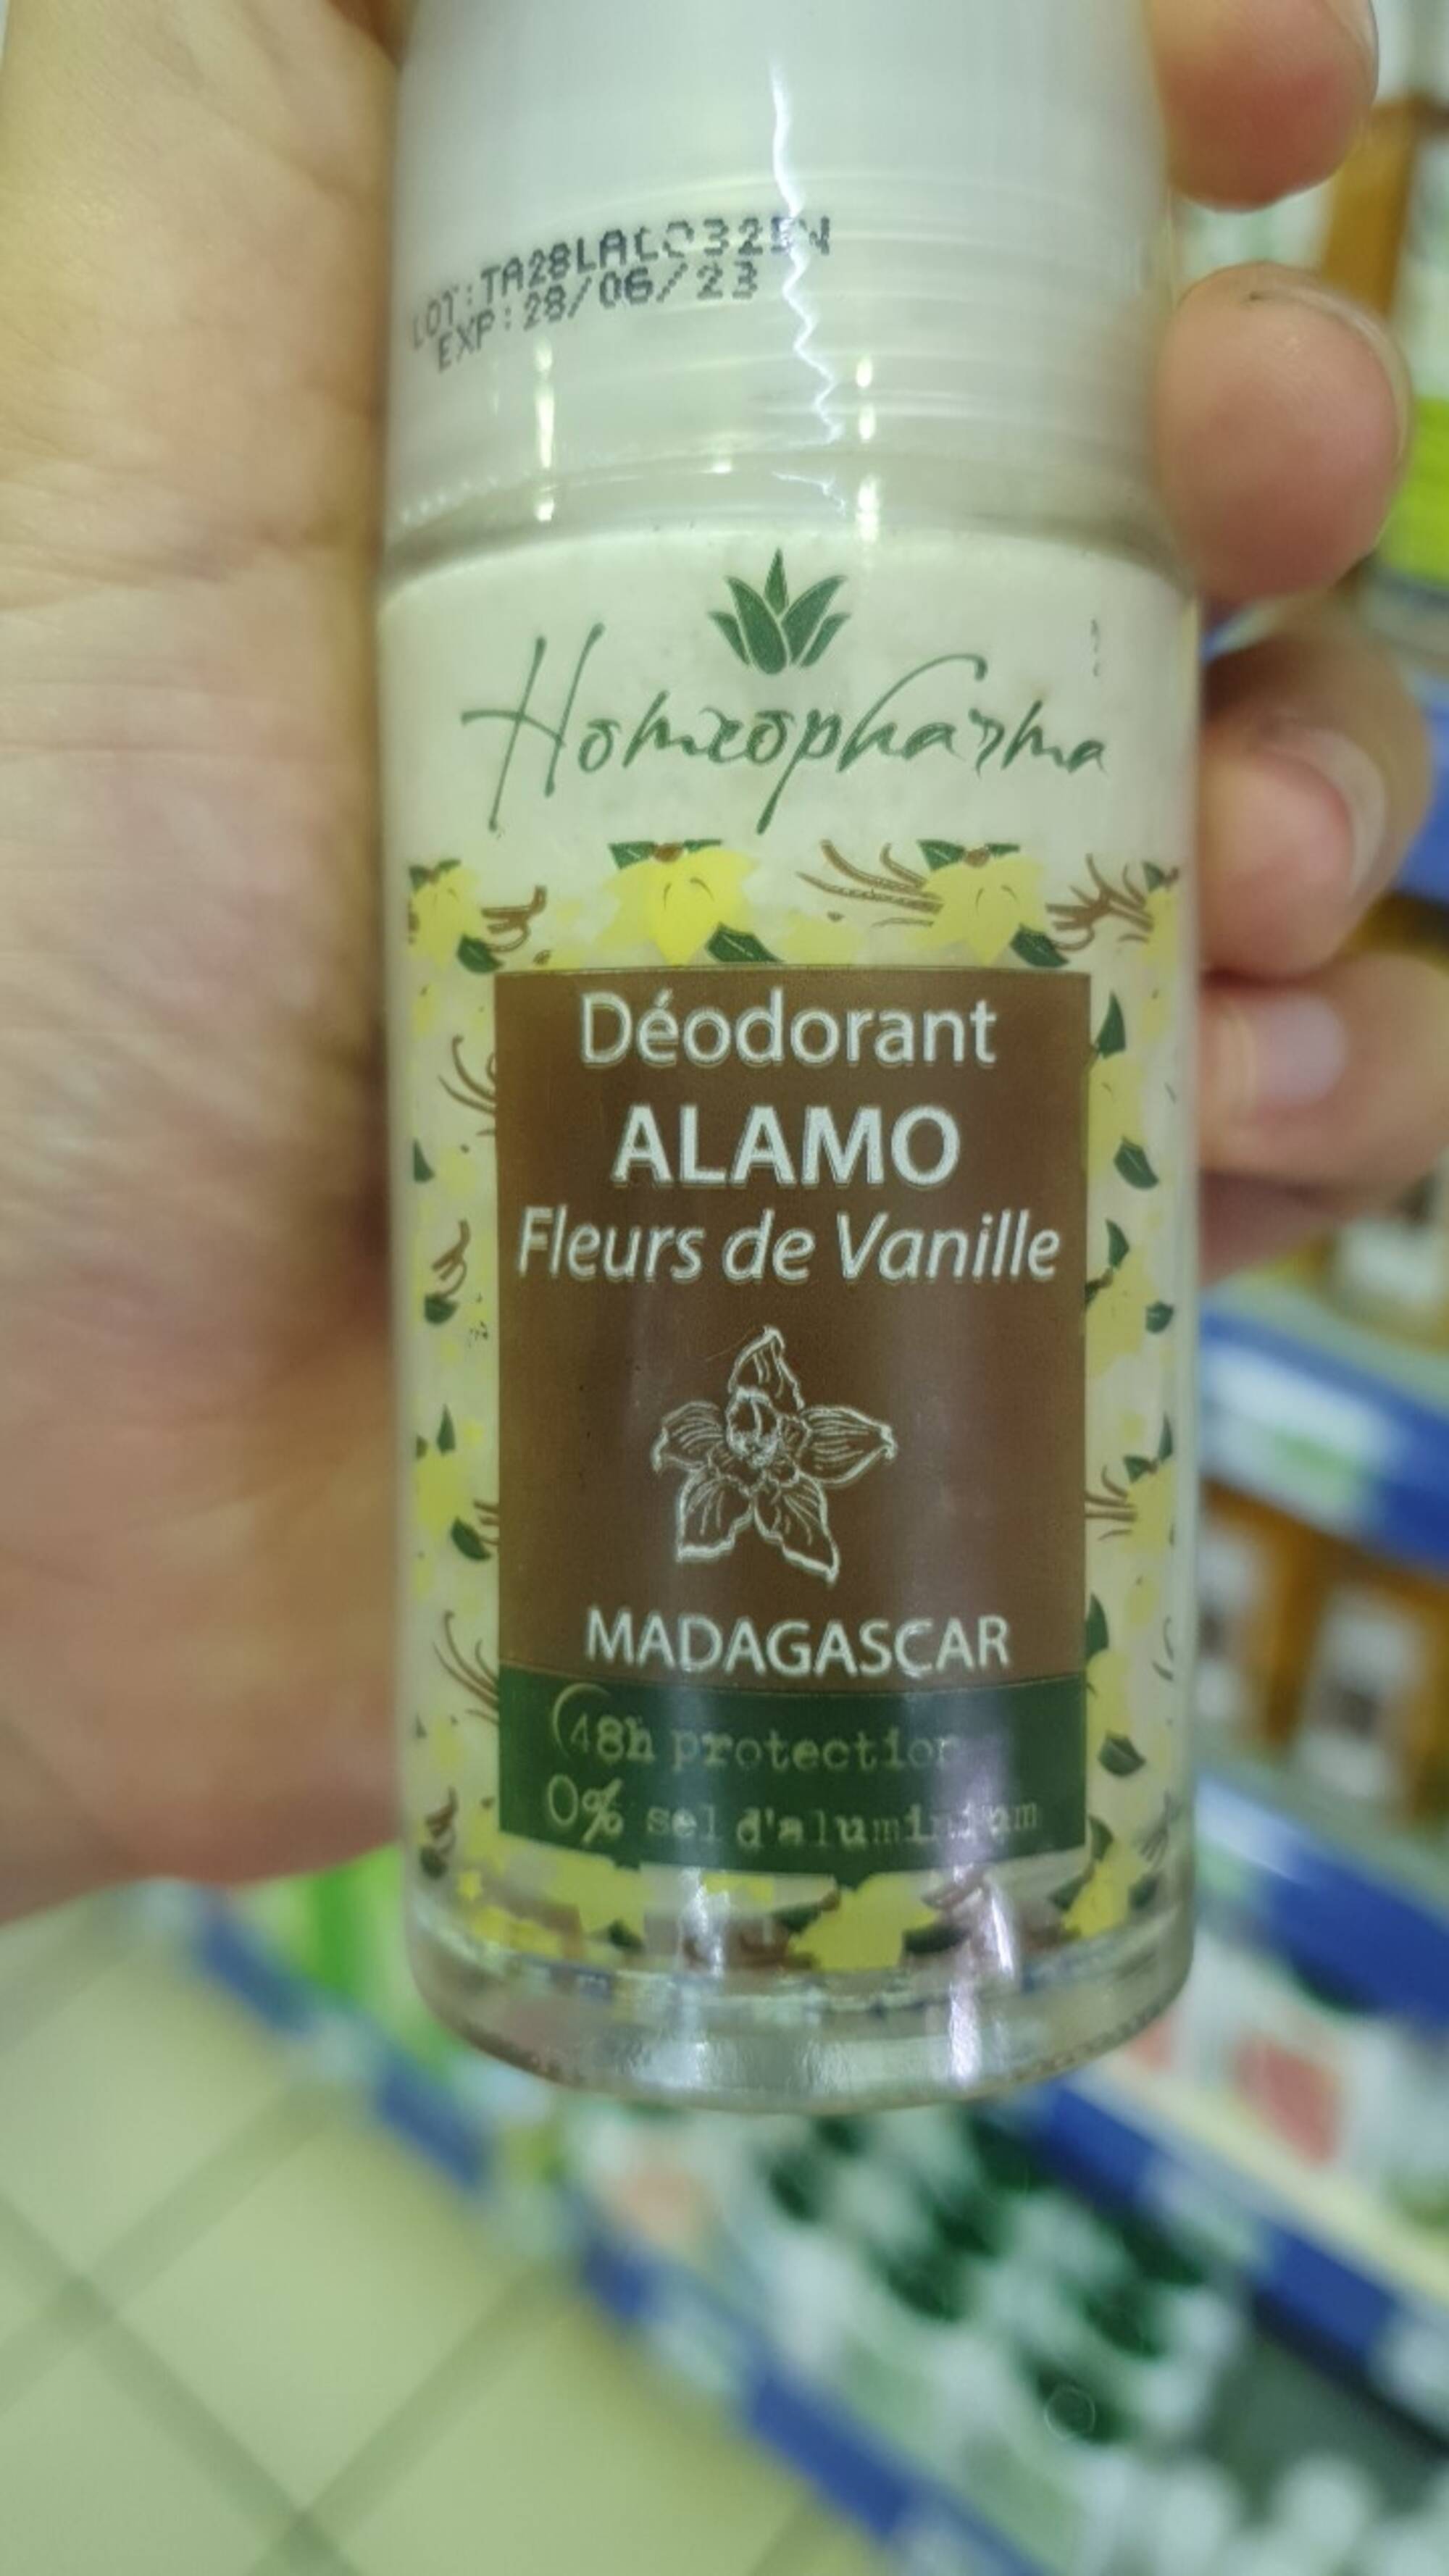 HOMÉOPHARMA - Alamo fleurs de vanille - Déodorant 48h protection